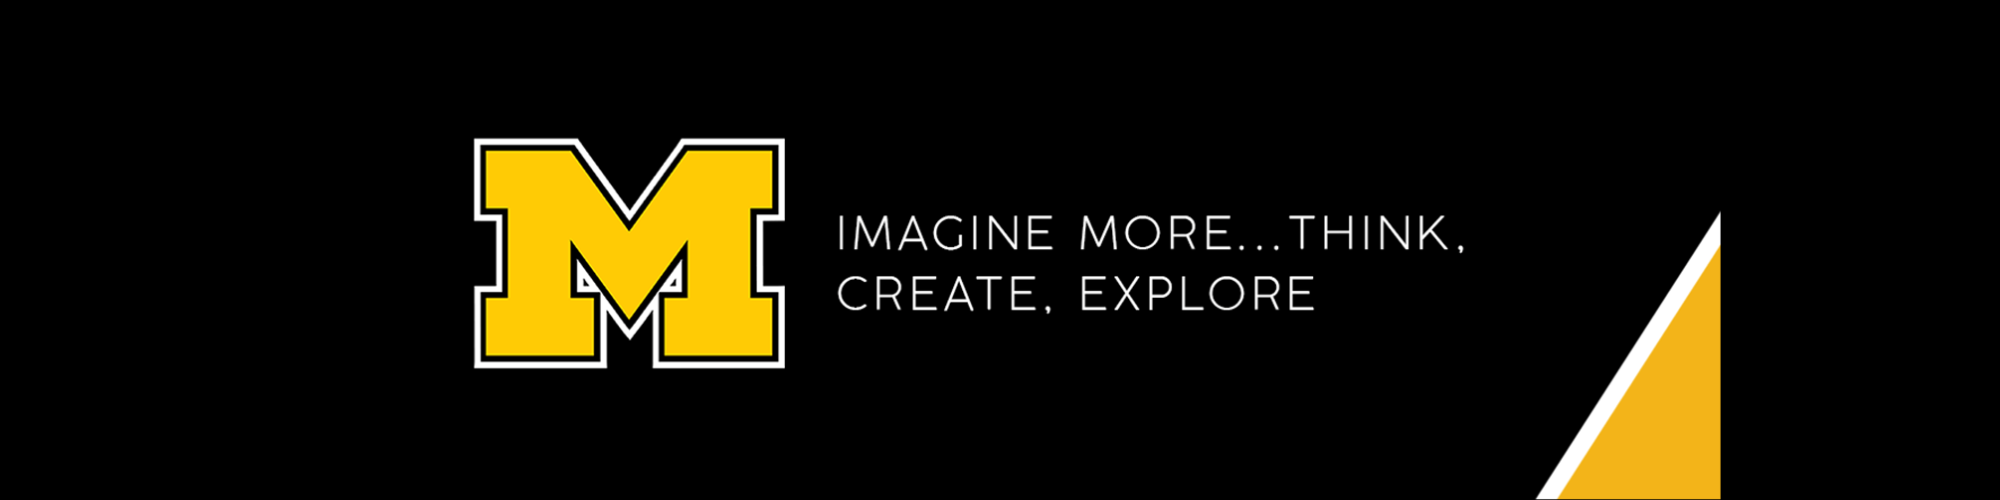 Imagine think create explore